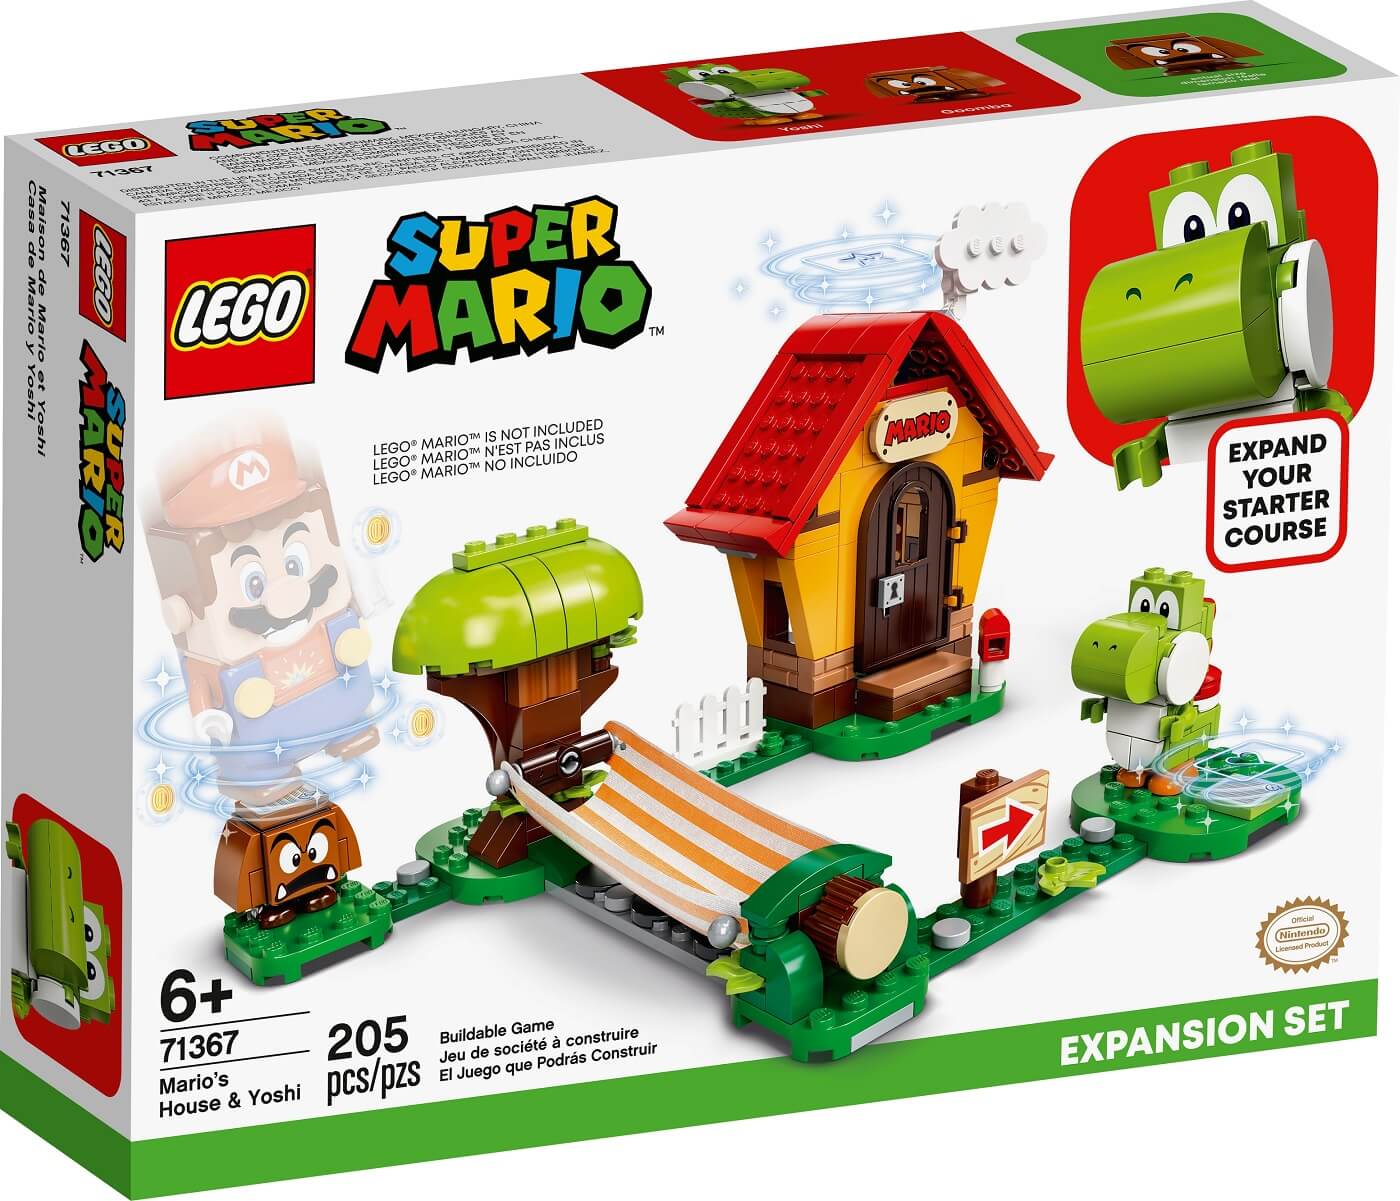 Casa de Mario y Yoshi Set de Expansion ( Lego 71367 ) imagen g